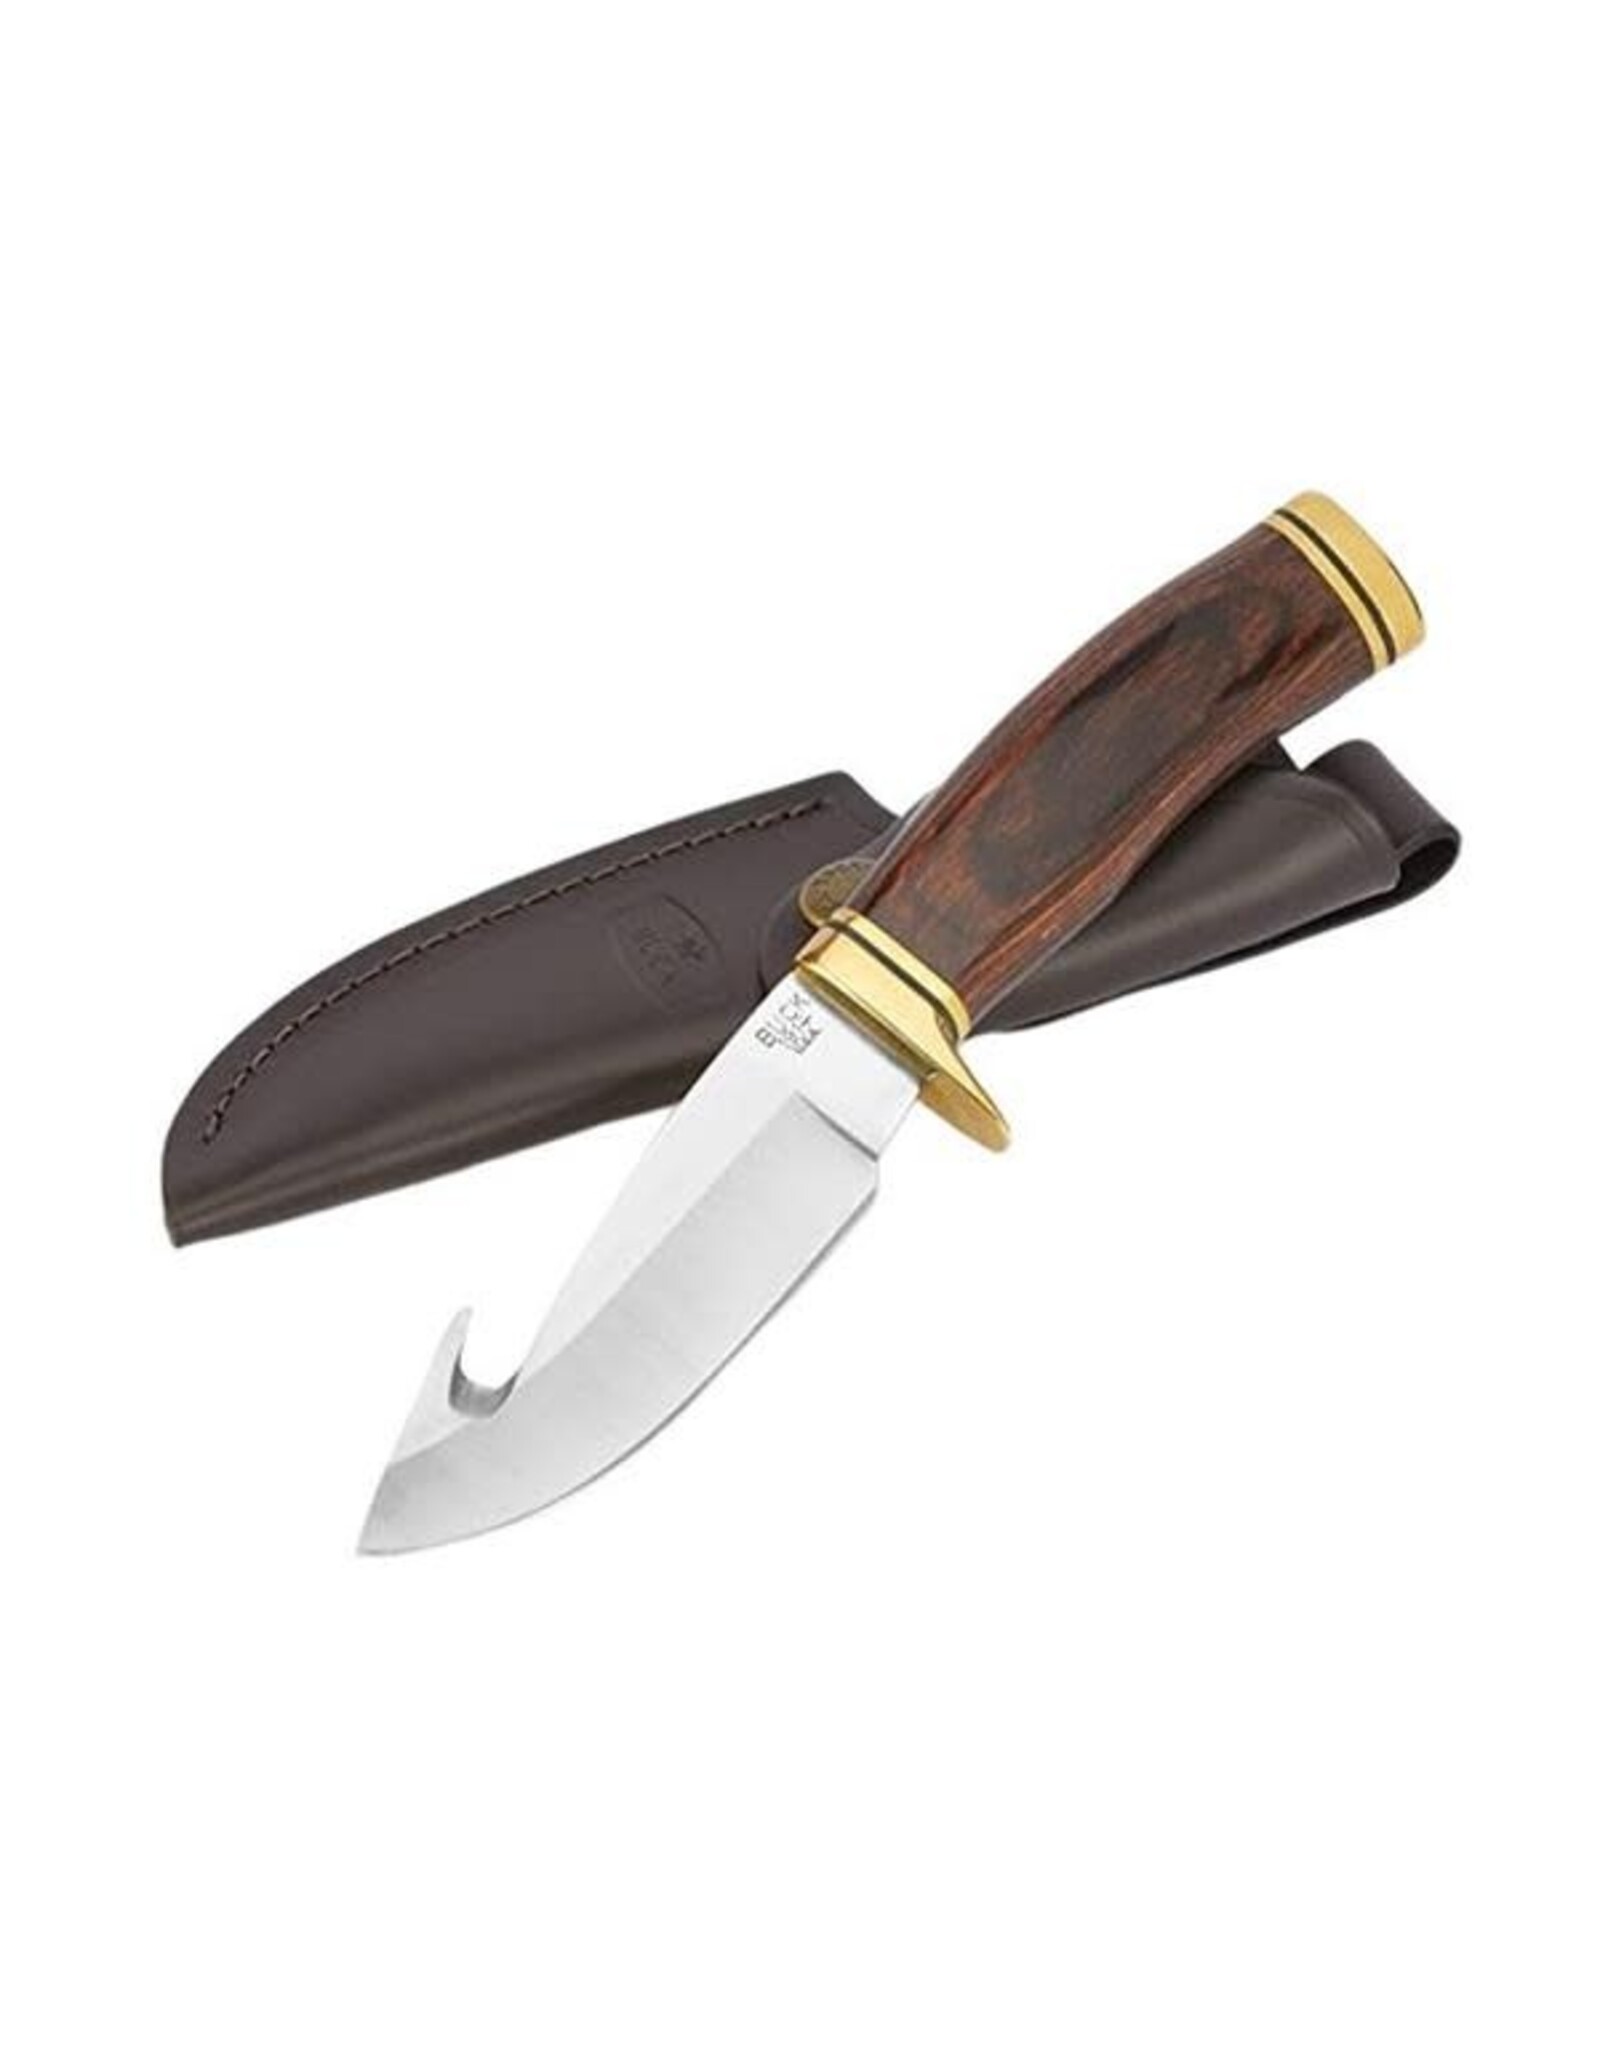 Buck Knives -  Zipper - 4-1/4" Fixed Blade